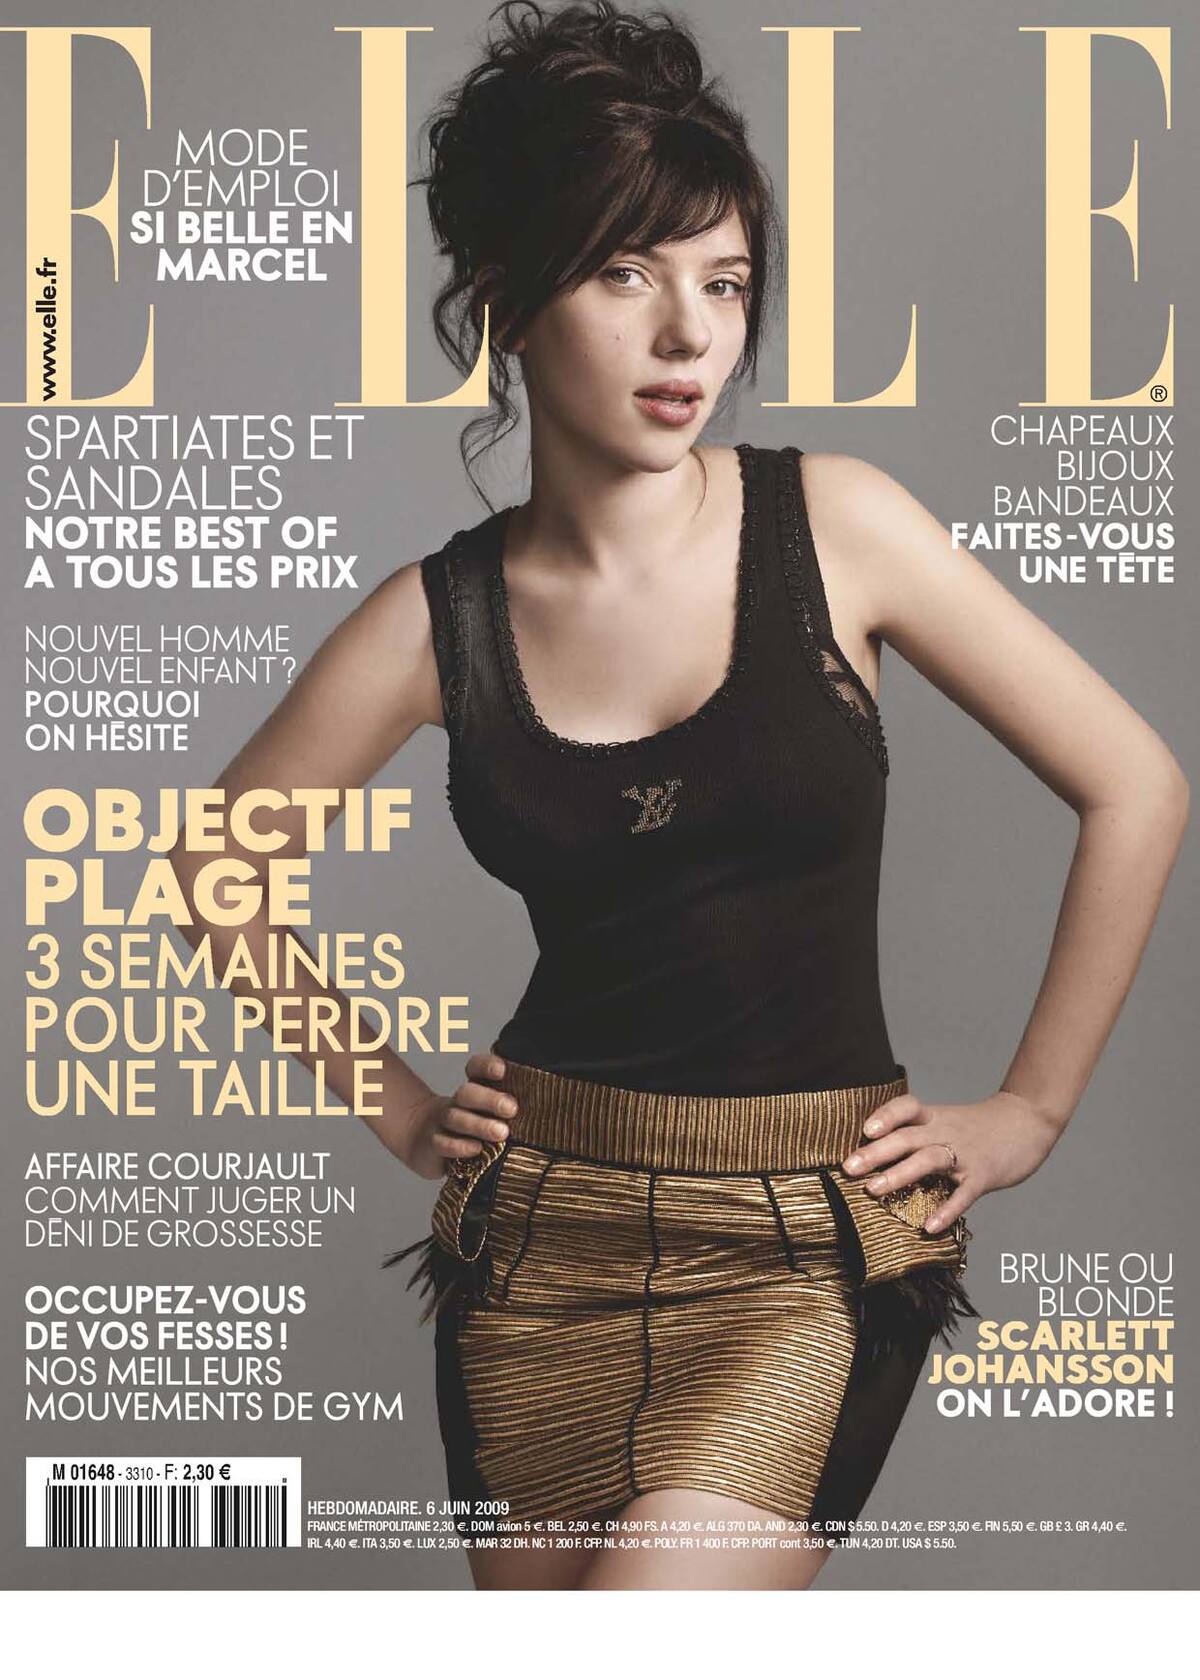 Скарлетт Йоханссонc в журнале ELLE. Франция. Июнь 2009